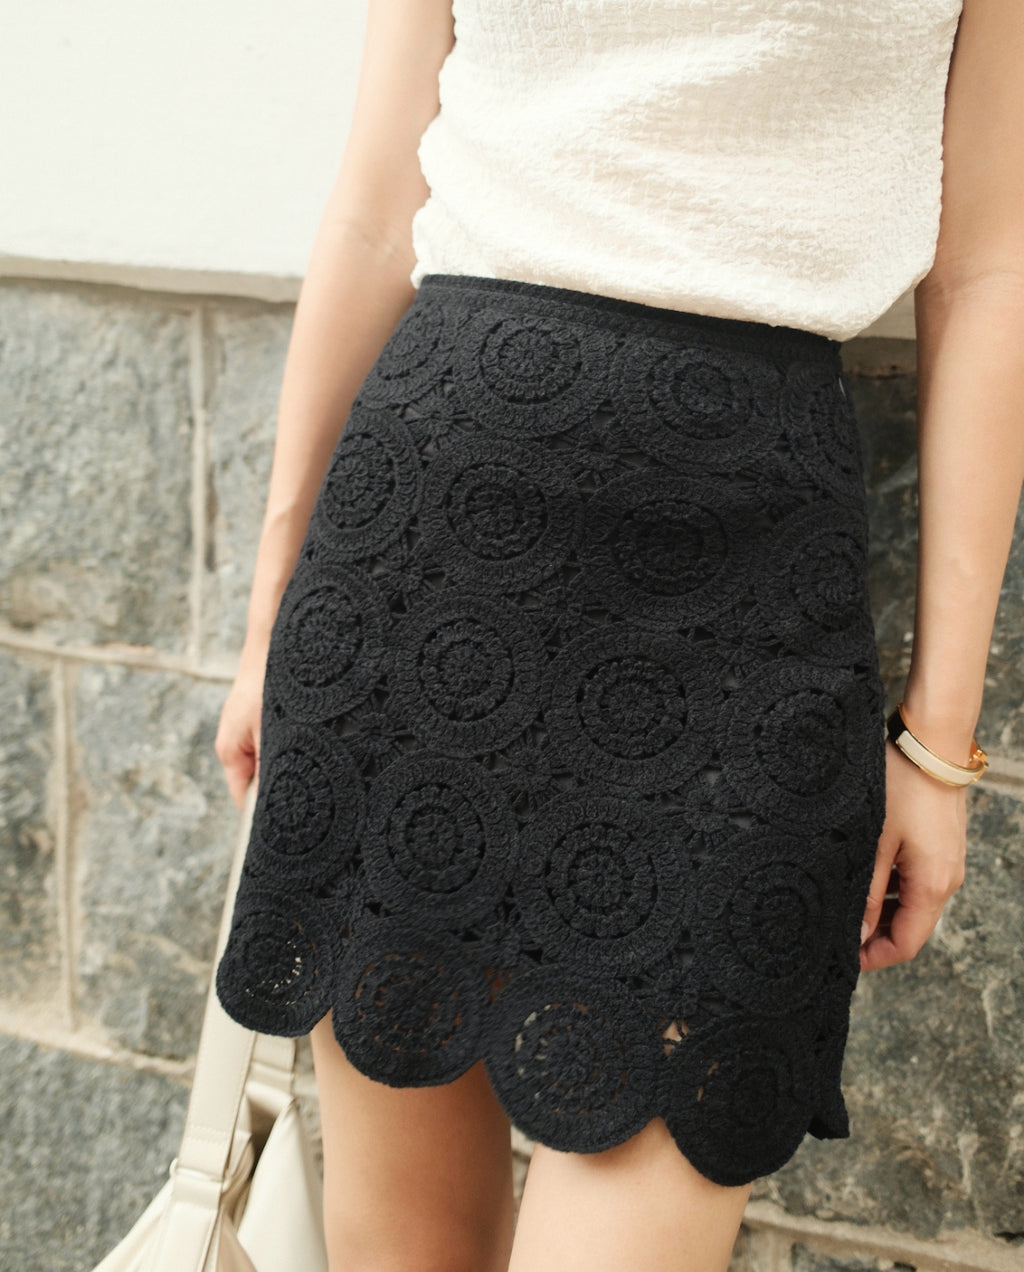 Crochet-Style Mosaic Tile Mini Skirt